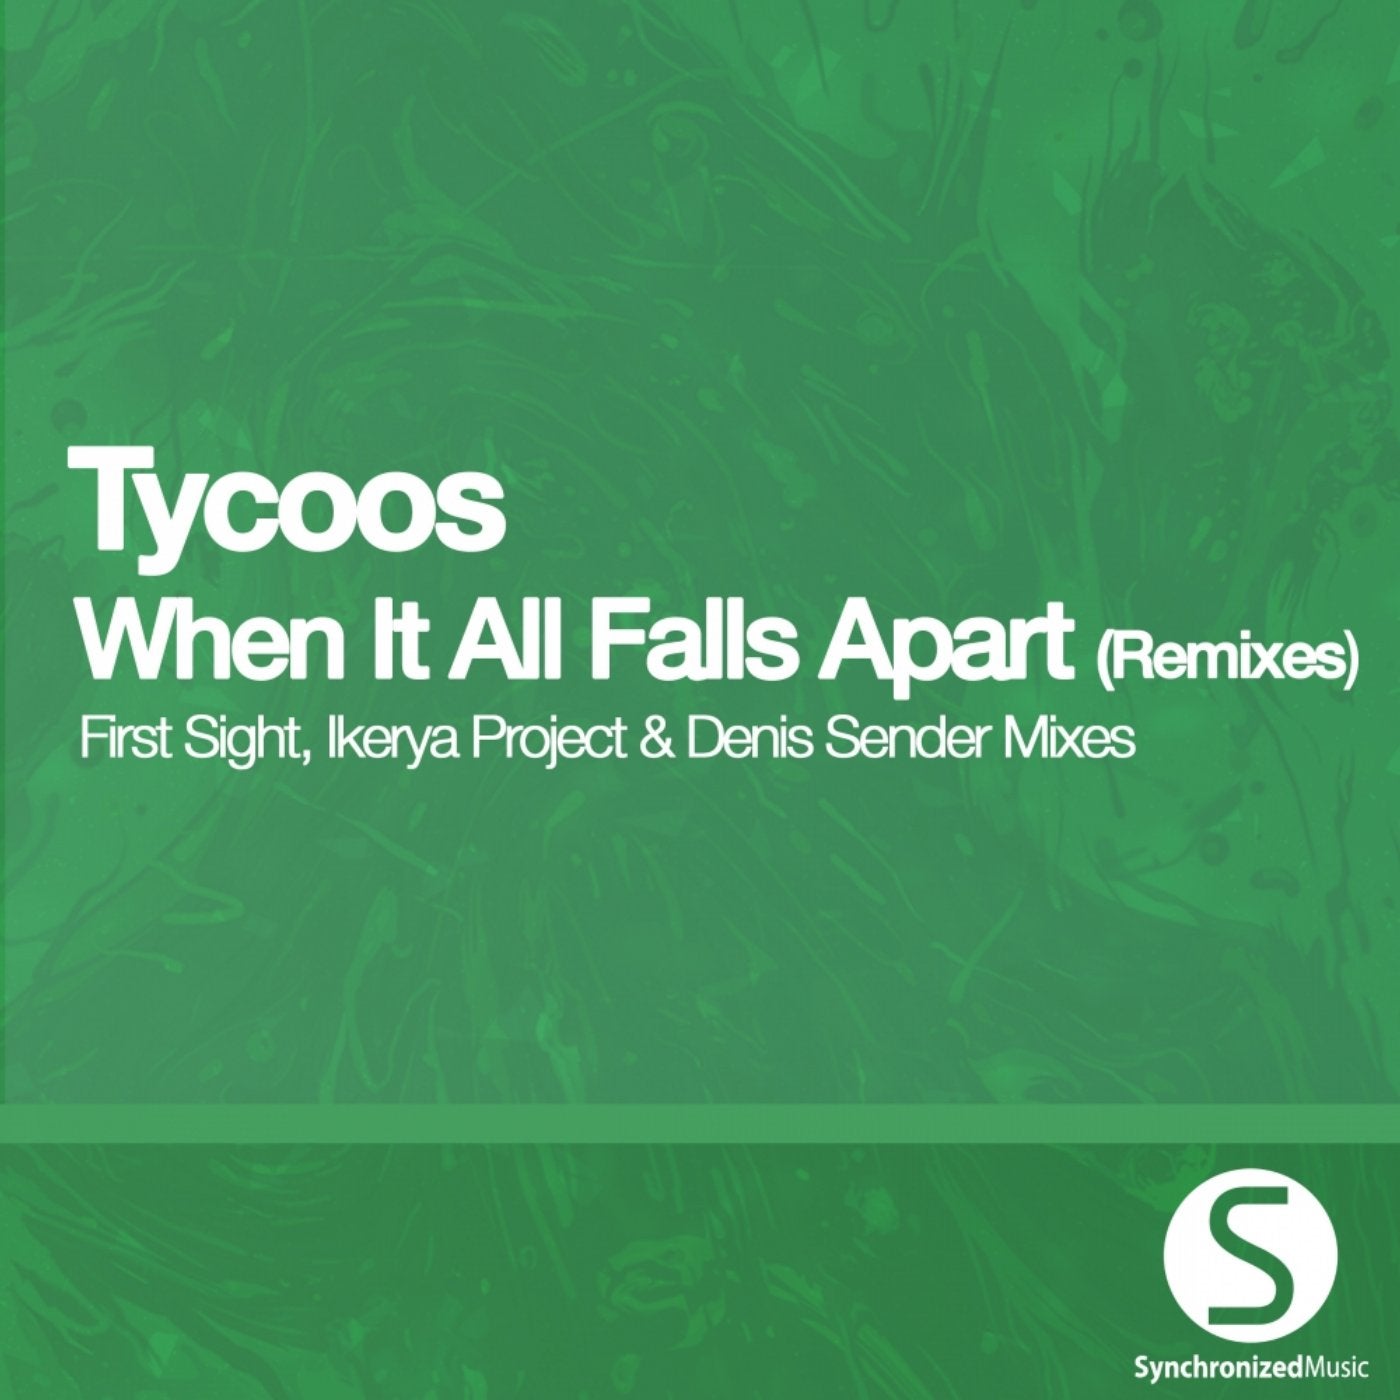 When It All Falls Apart (Remixes)